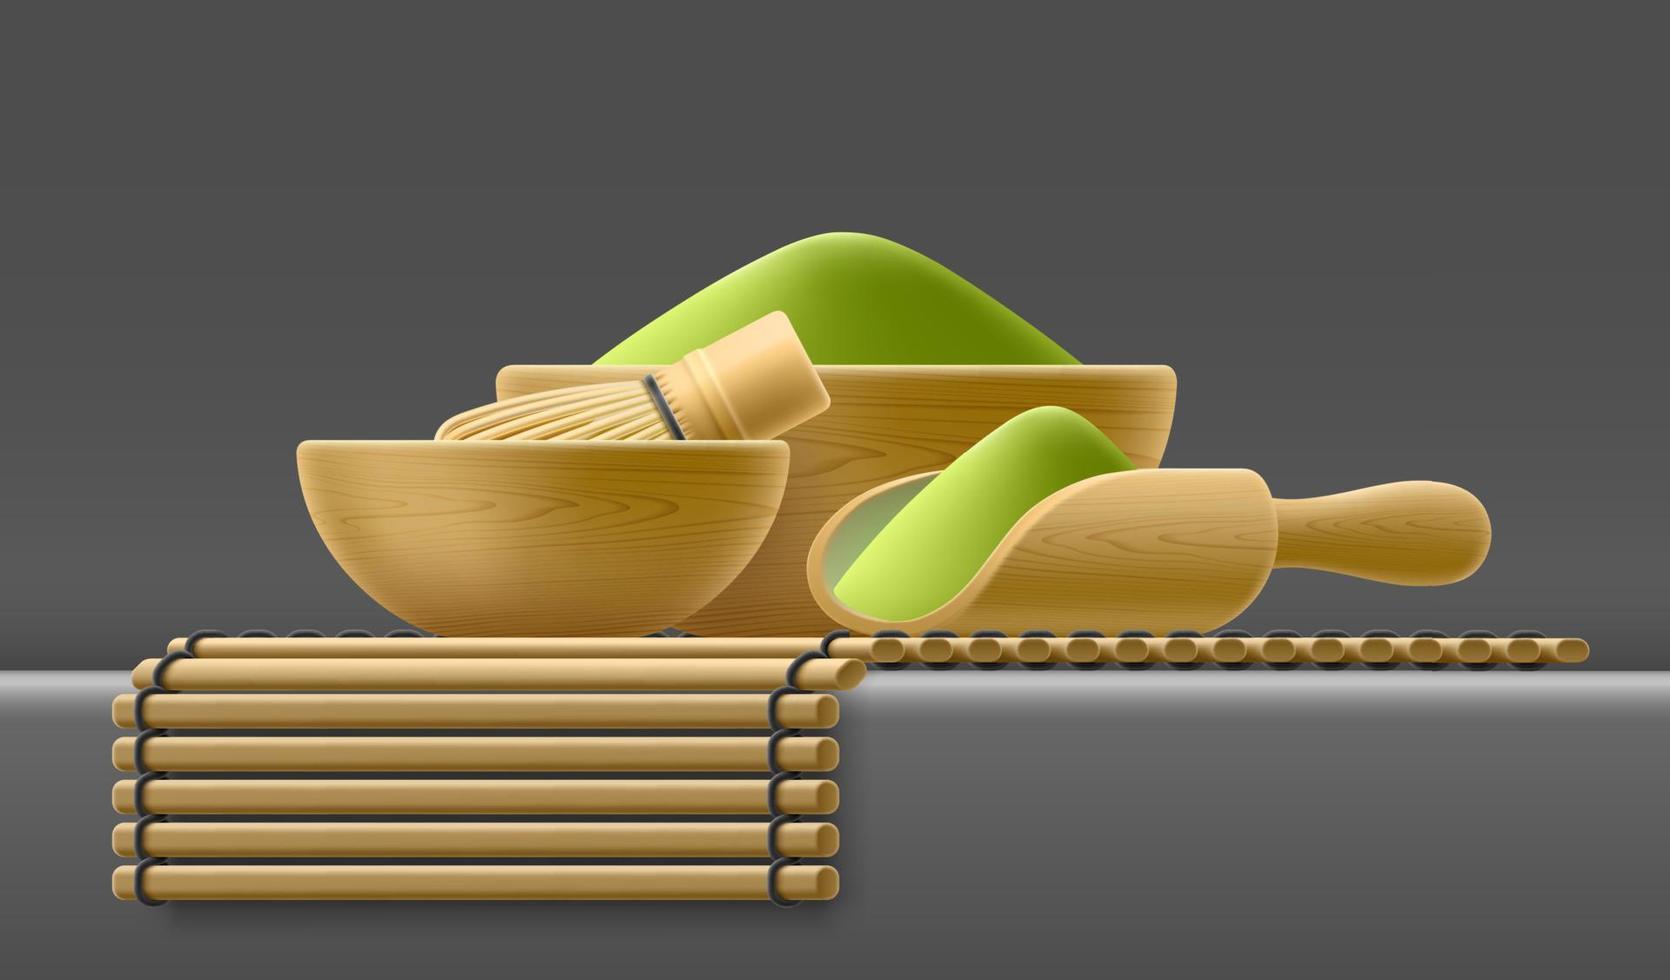 giapponese tradizionale matcha biologico verde tè polvere. vettore 3d illustrazione di bambù cucinando impostare. frusta per sbattere modello, ciotola, tovagliolo su buio sfondo. di legno utensili